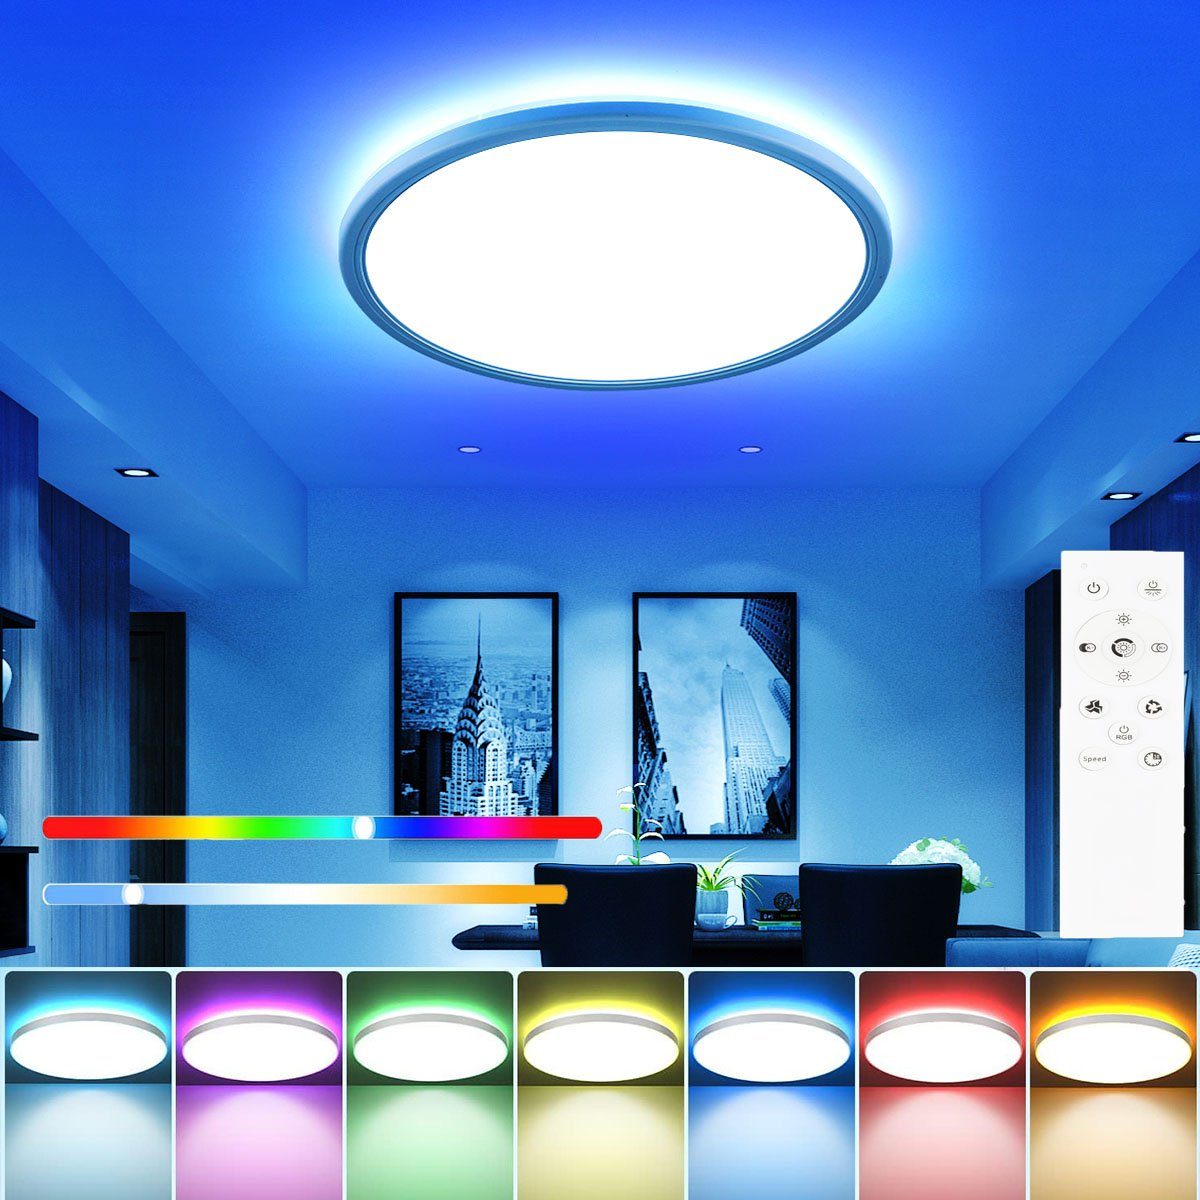 LETGOSPT LED Deckenleuchte Dimmbare, 24W Wohnzimmer Ultra LED Schlafzimmer Bad 30 Dünn Rund x 3cm, LED fest RGB Deckenlampe für Deckenbeleuchtung, Hintergrundlicht integriert, Kaltweiß+Naturweiß+Warmweiß+RGB, Flach Küche